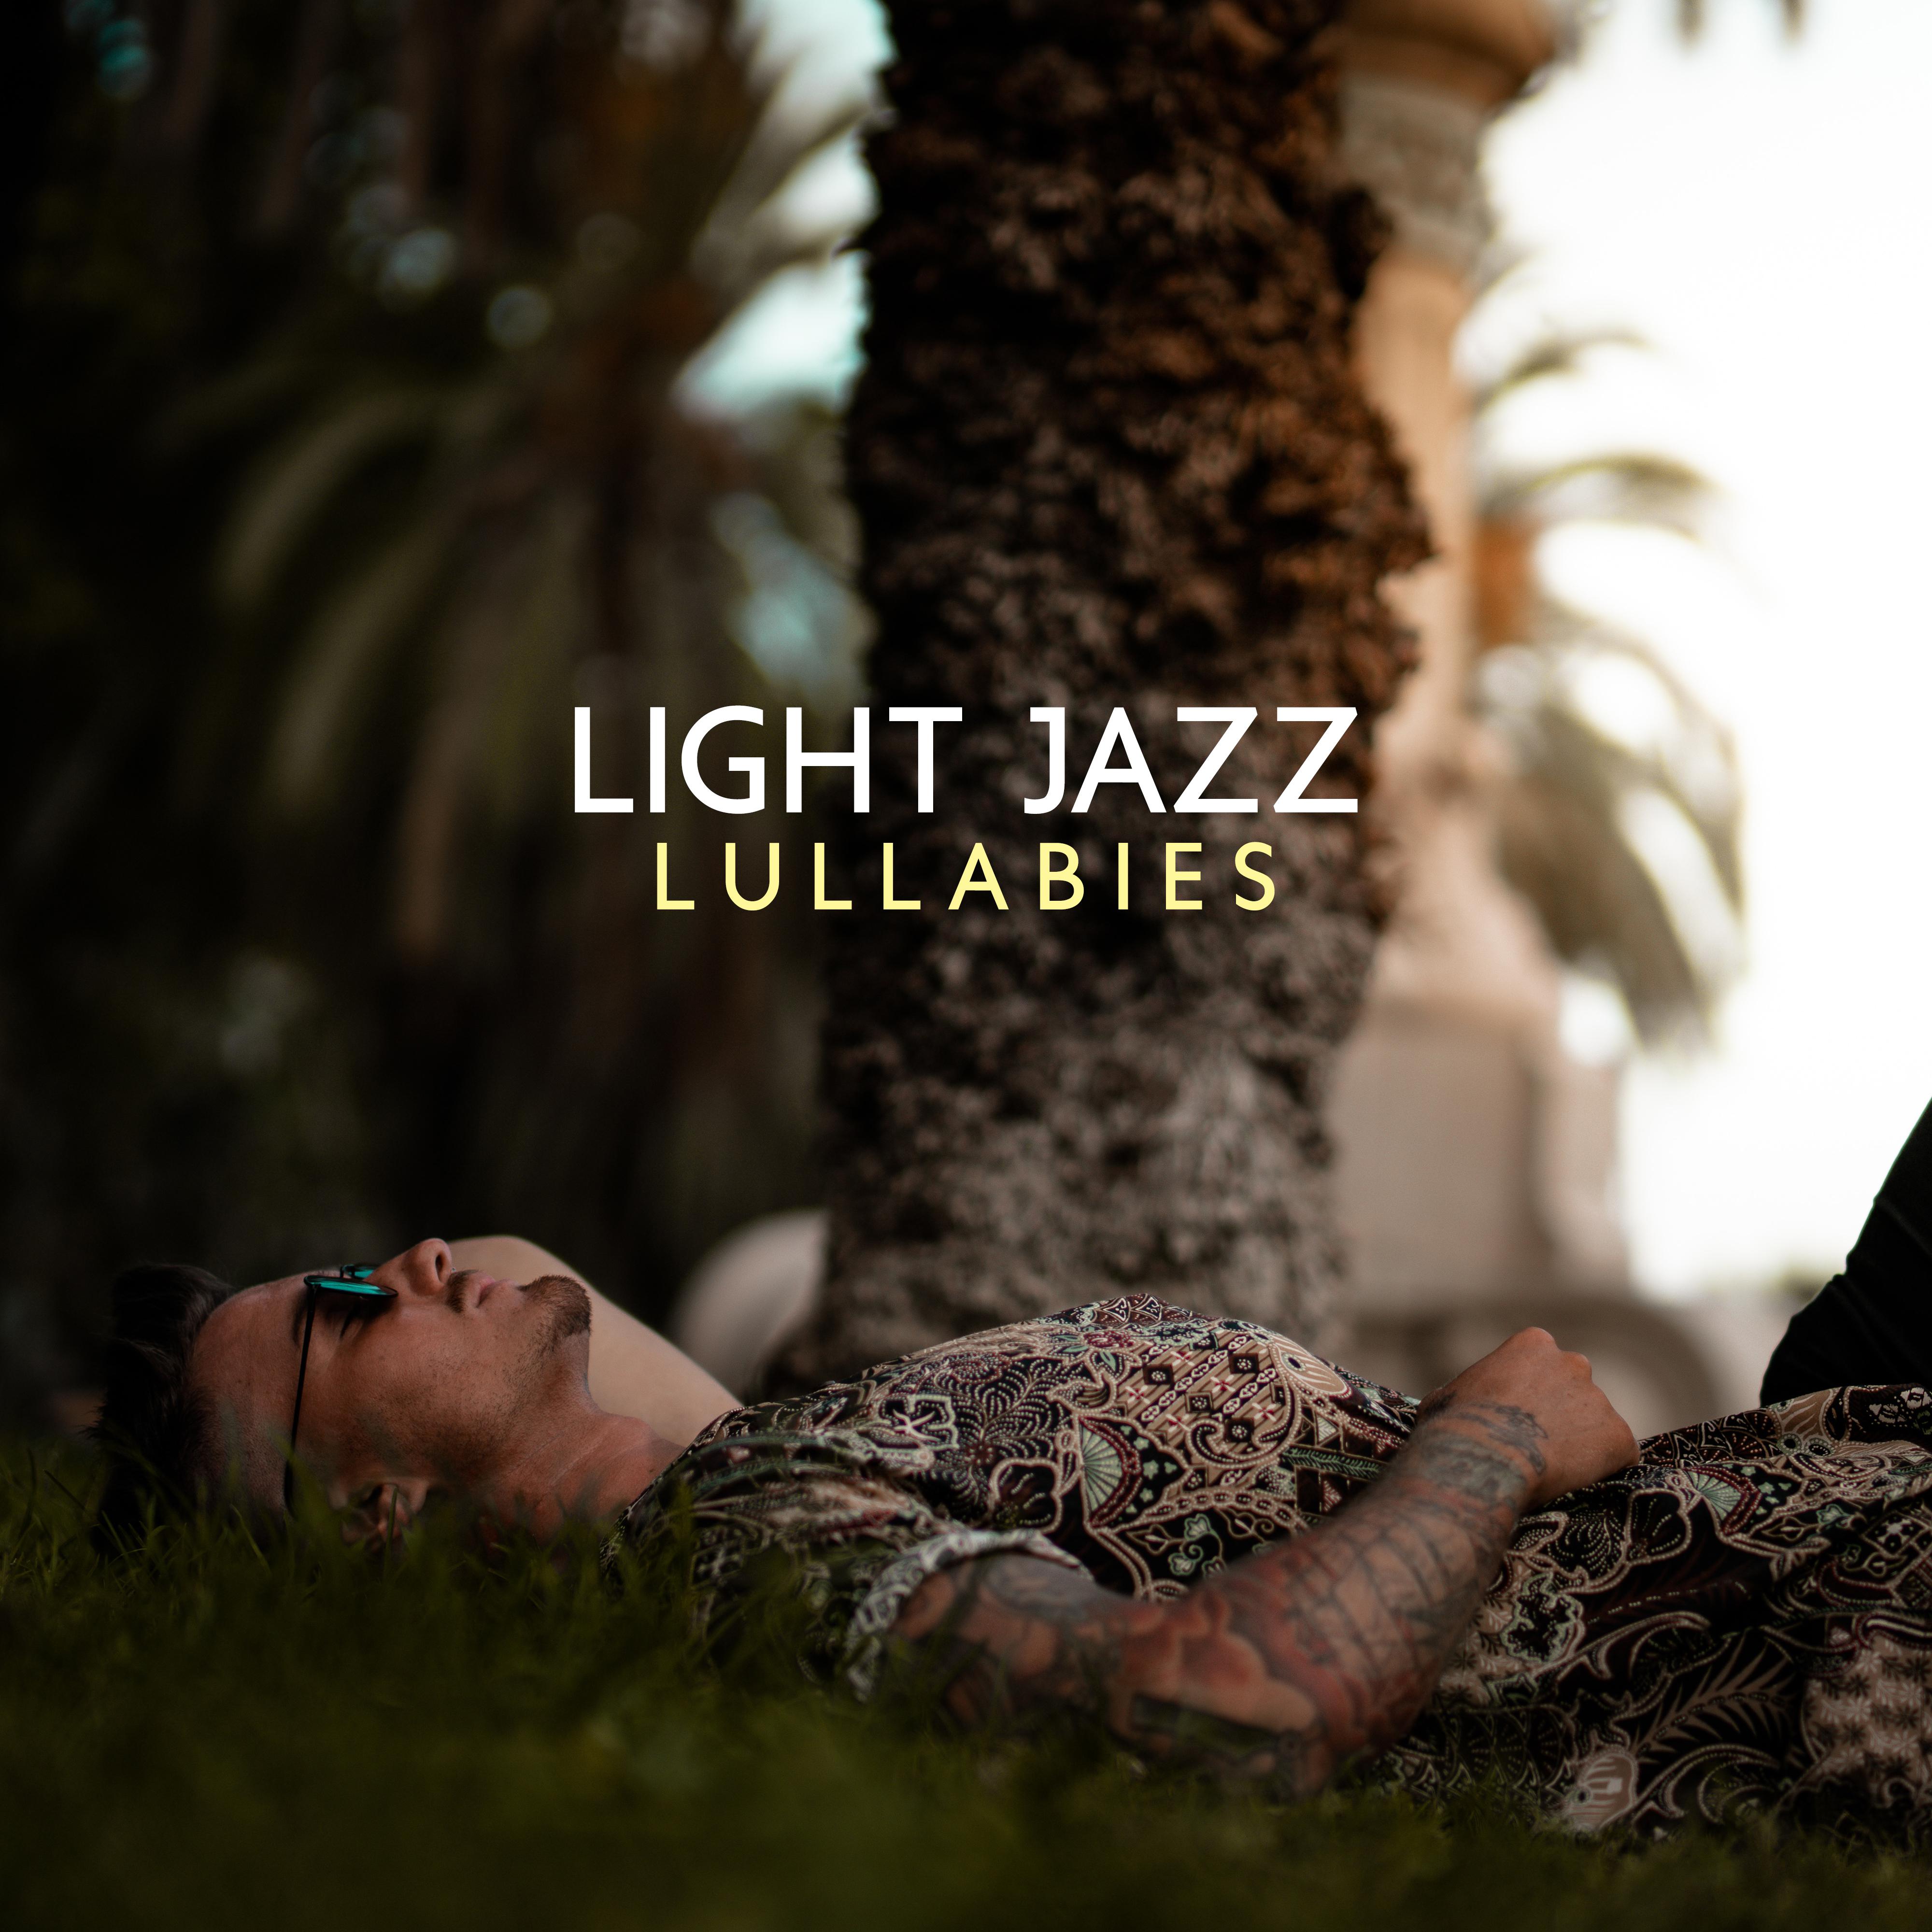 Light Jazz Lullabies – Night Jazz, Calming Sounds for Relaxation, Sleep, Rest, Soft Lullabies, Jazz Lounge, Deeper Sleep